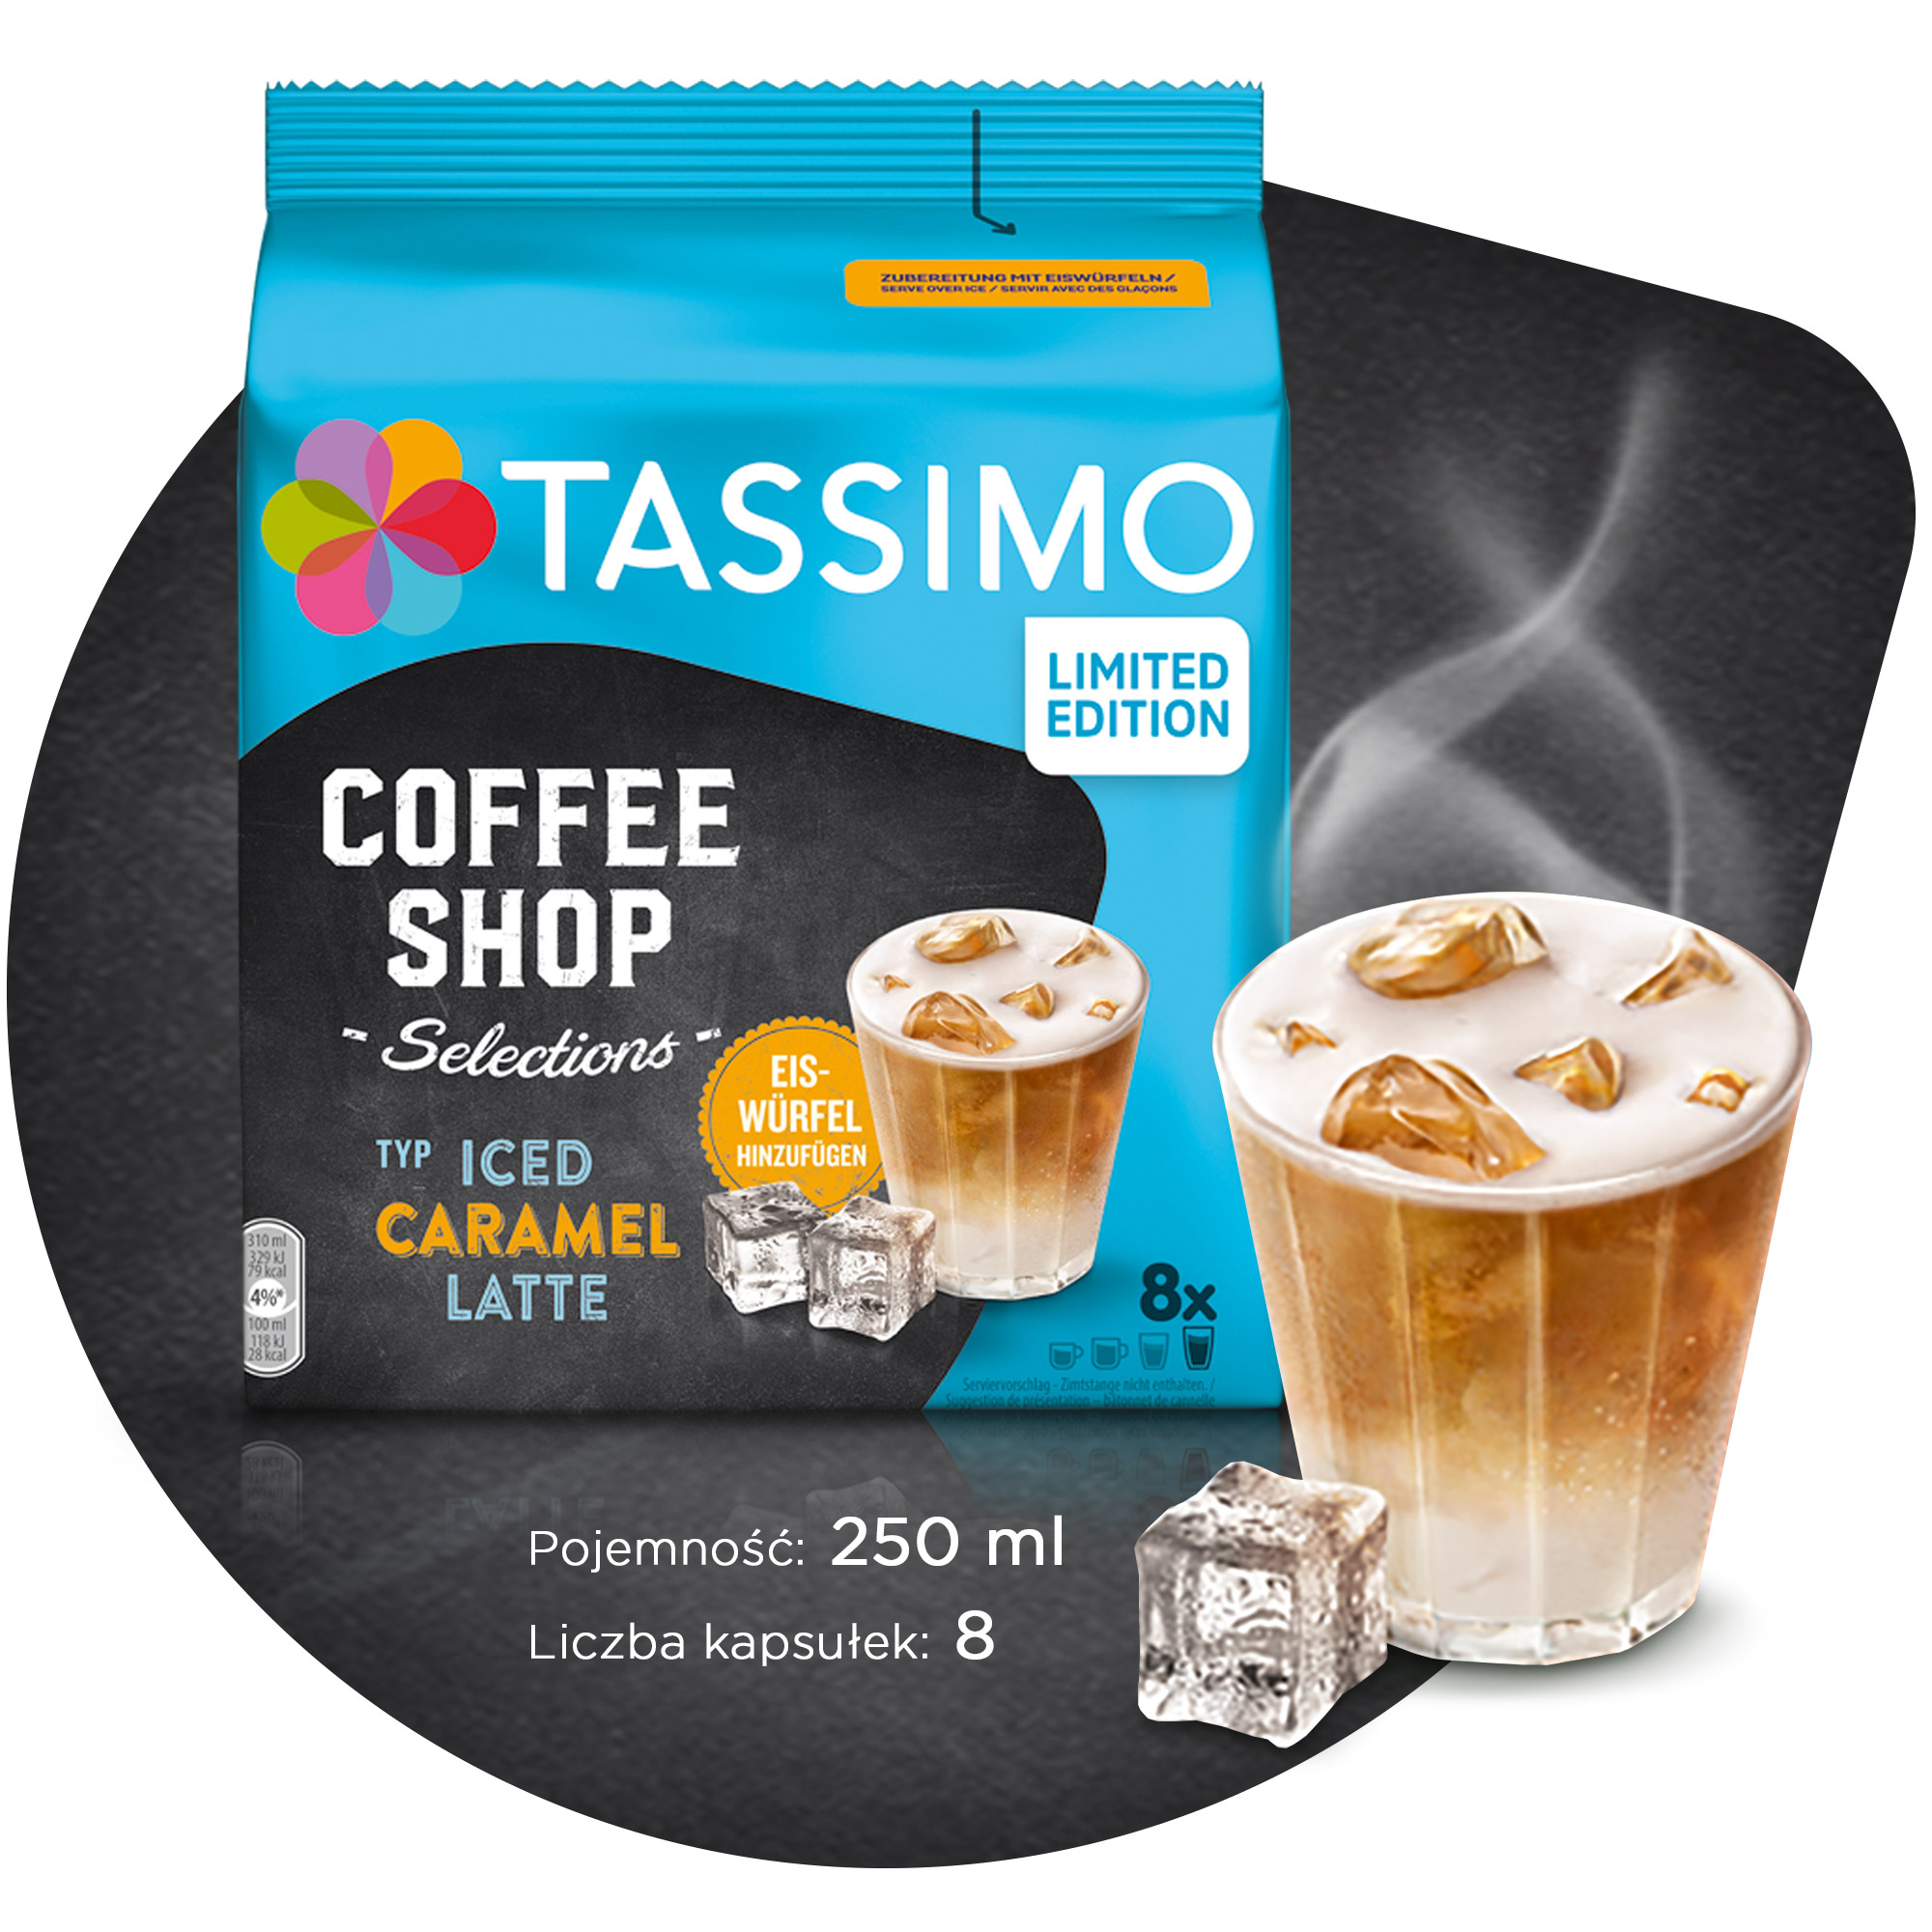 Packshot_Secondary_1_Tassimo_Iced_Caramel_Latte